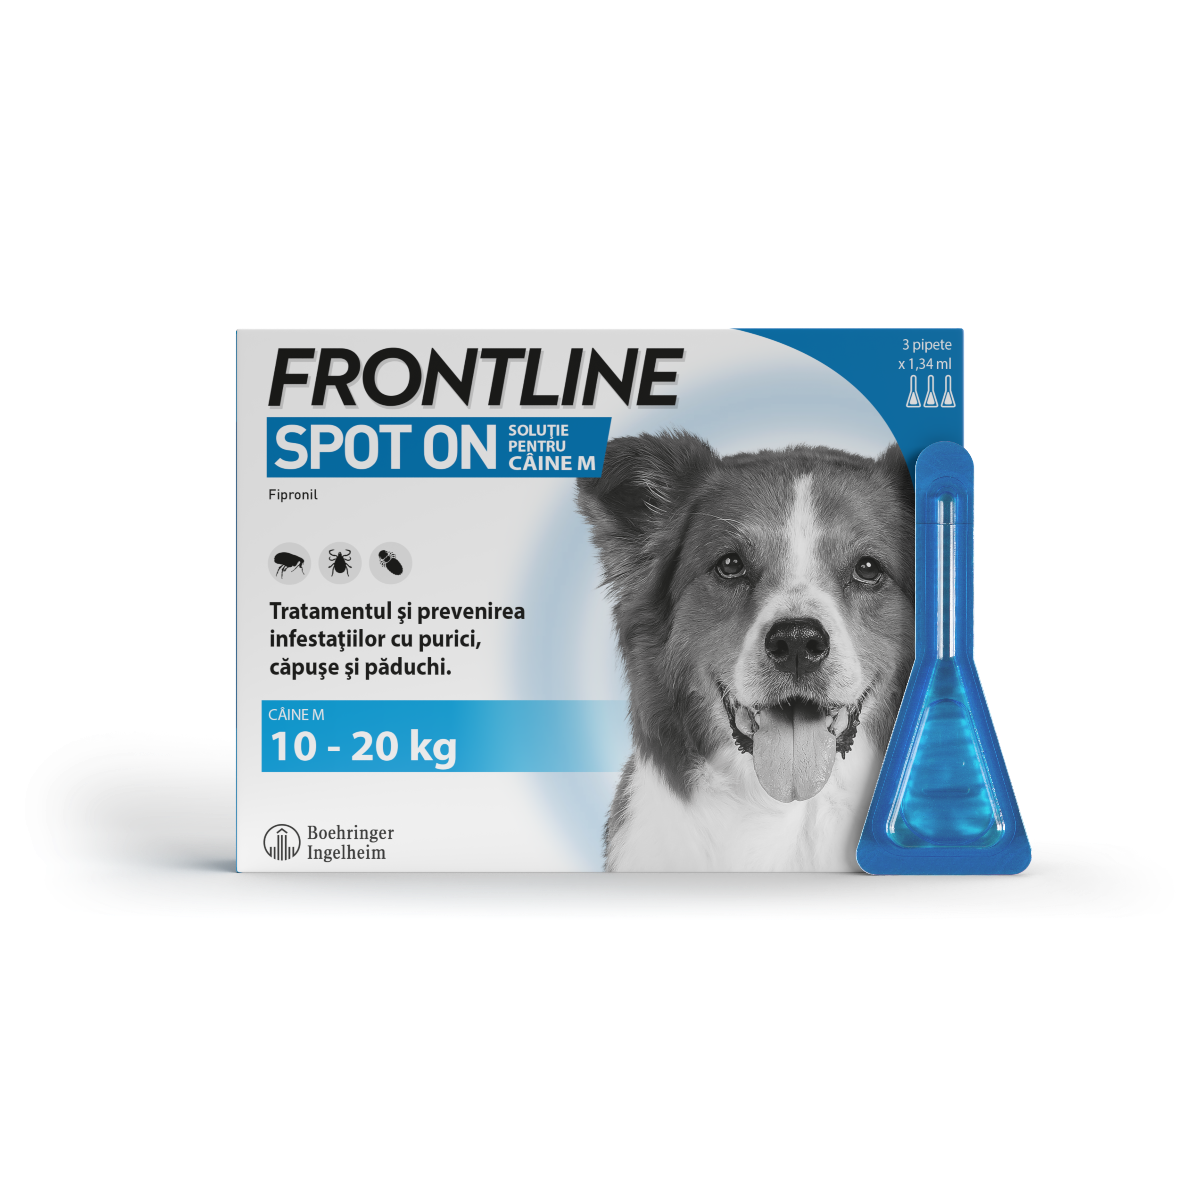 Frontline Spot On M pentru caini 10-20 kg, 3 pipete, Frontline